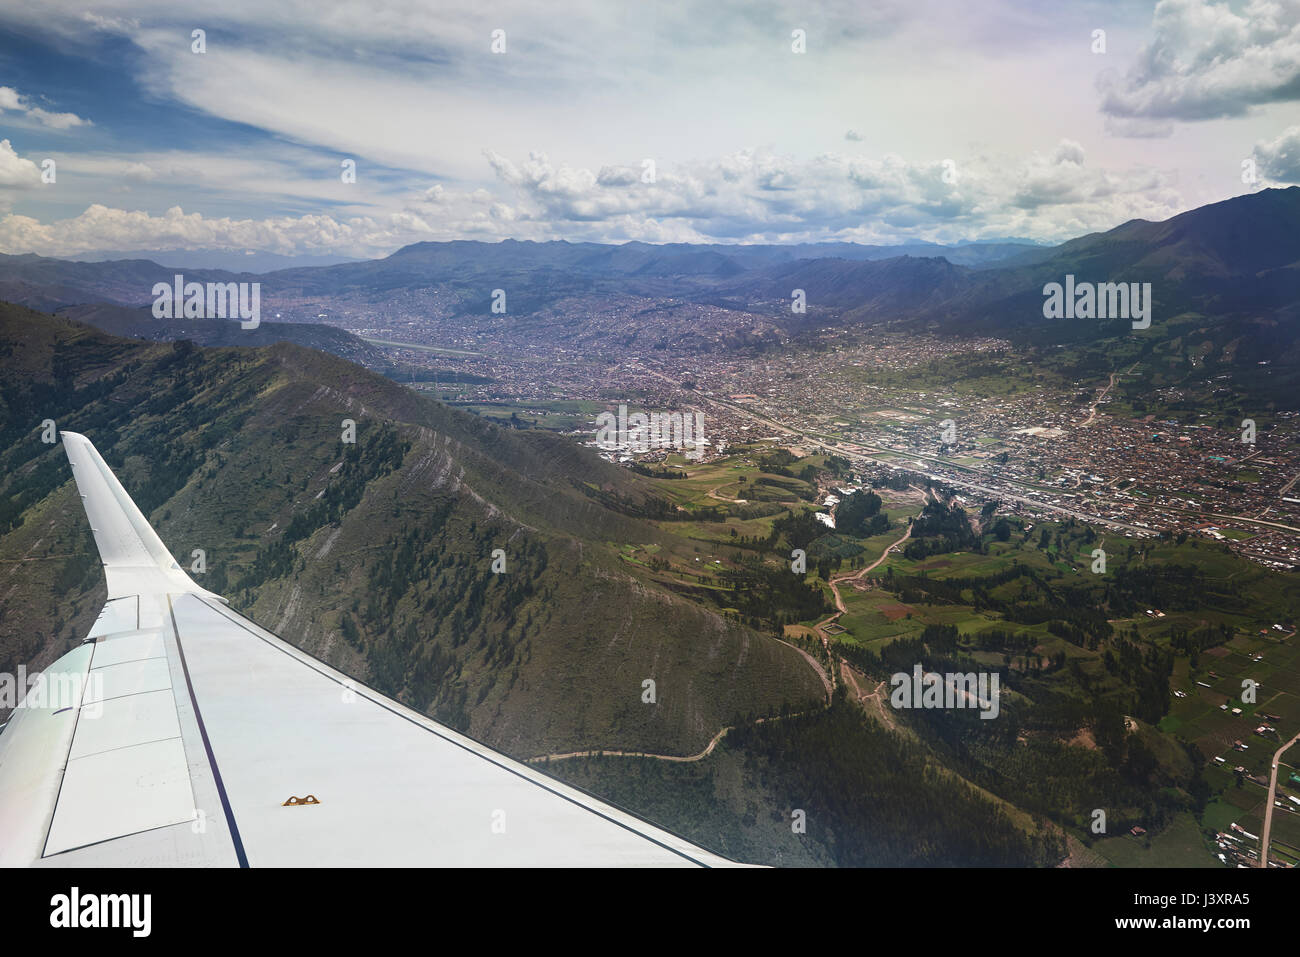 La ciudad de Cusco desde la ventana de vista plano, ala de avión en ciudad de paisaje de montaña Foto de stock